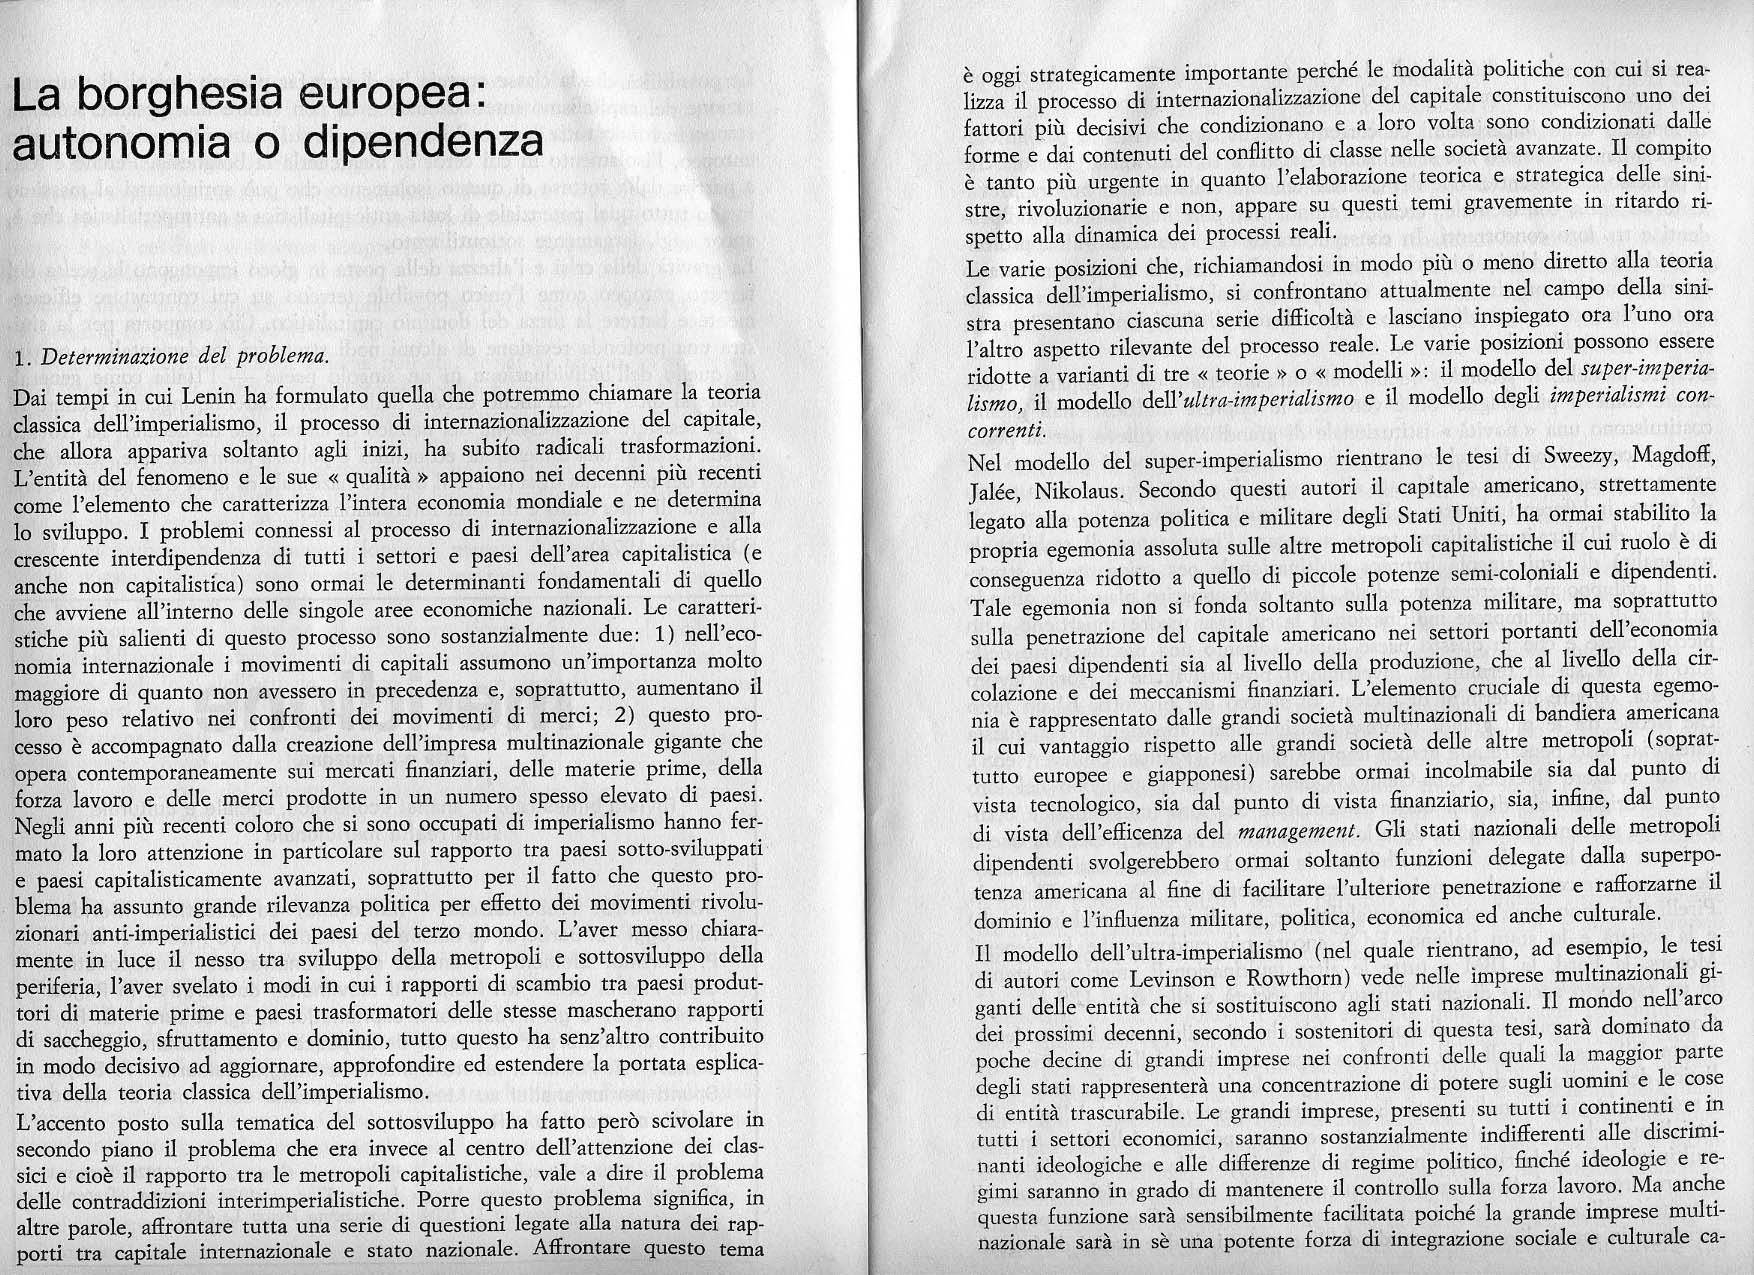 La borghesia europea: autonomia o dipendenza, dalla rivista Lotta di Classe e Integrazione Europea n.3/4, pp 12 e 13